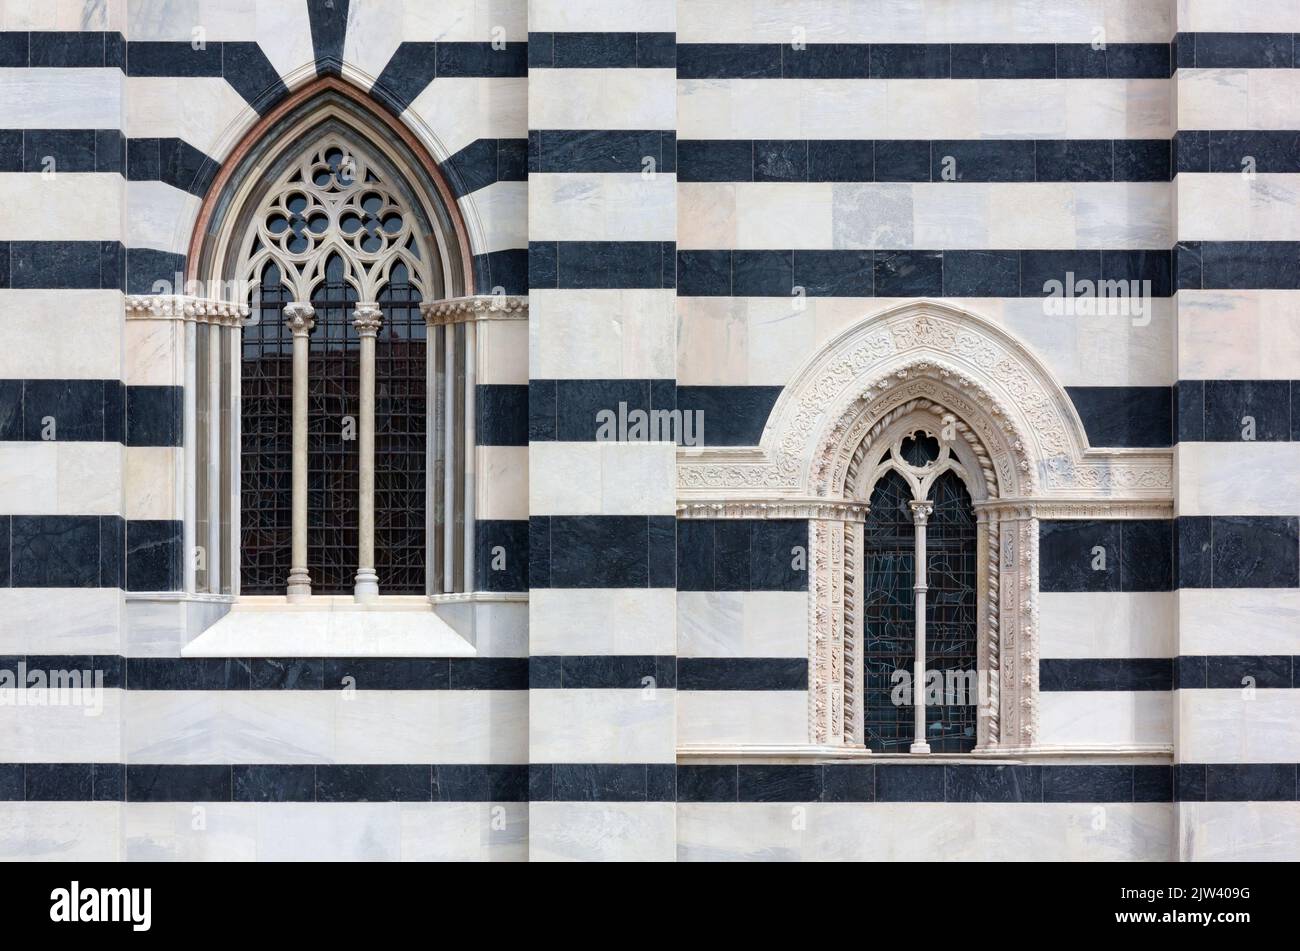 Particolare della facciata esterna del Duomo di Monza, Italia, e dei suoi marmi bimonati dopo la ristrutturazione terminata nel 2020 Foto Stock